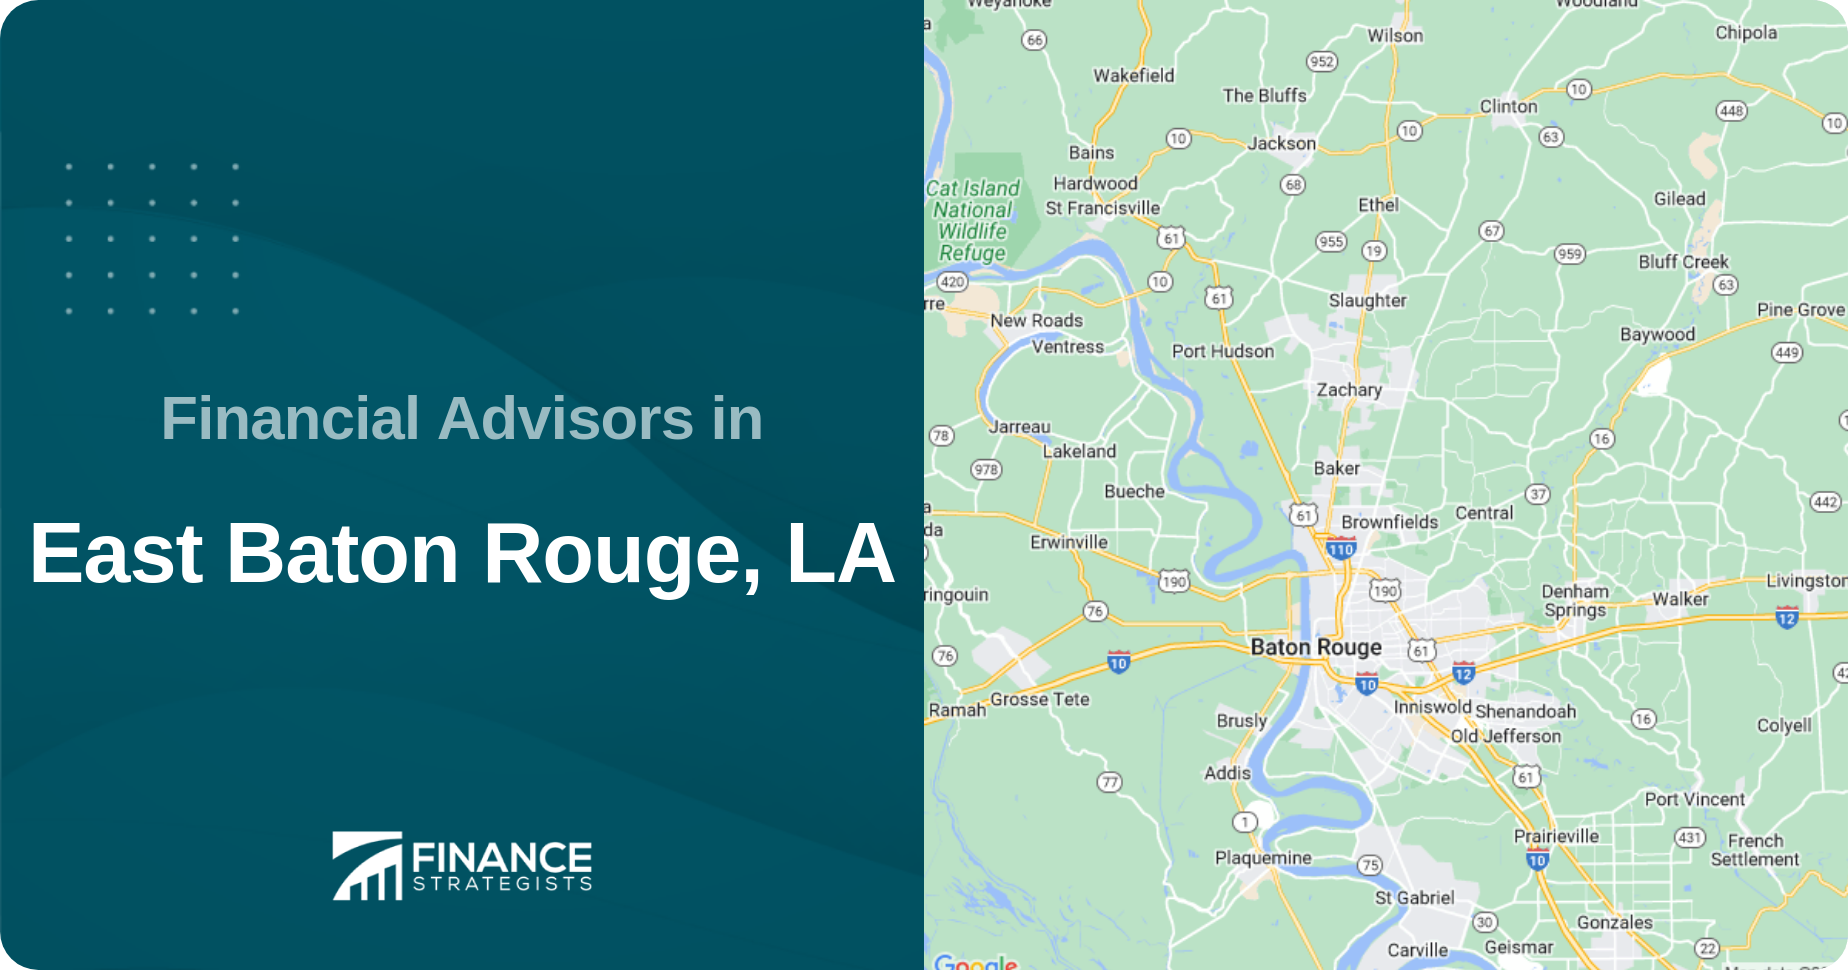 Financial Advisors in East Baton Rouge, LA